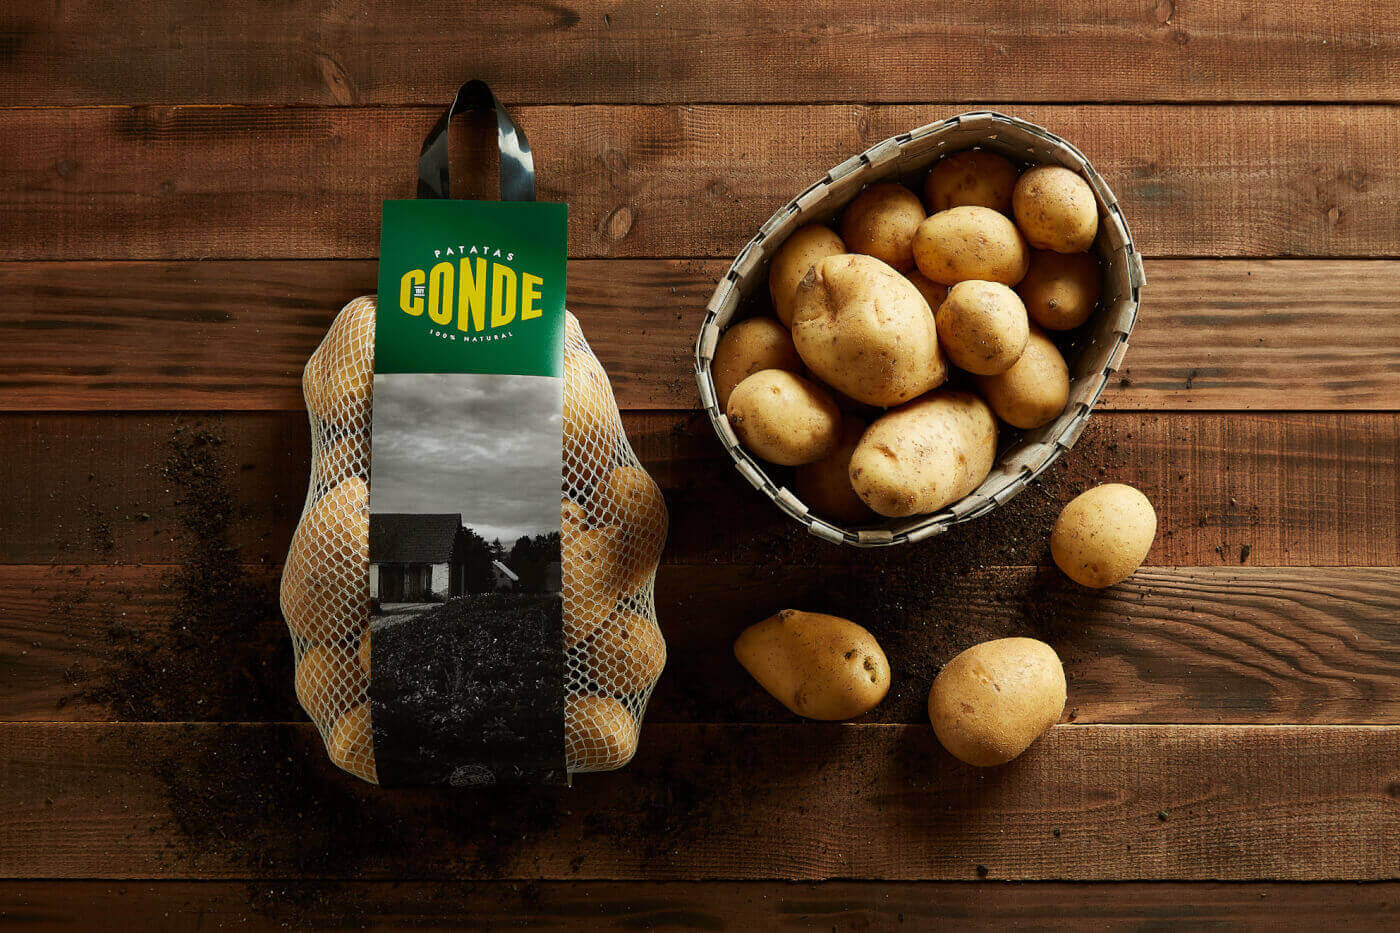 Comprar patata común de Patatas Conde